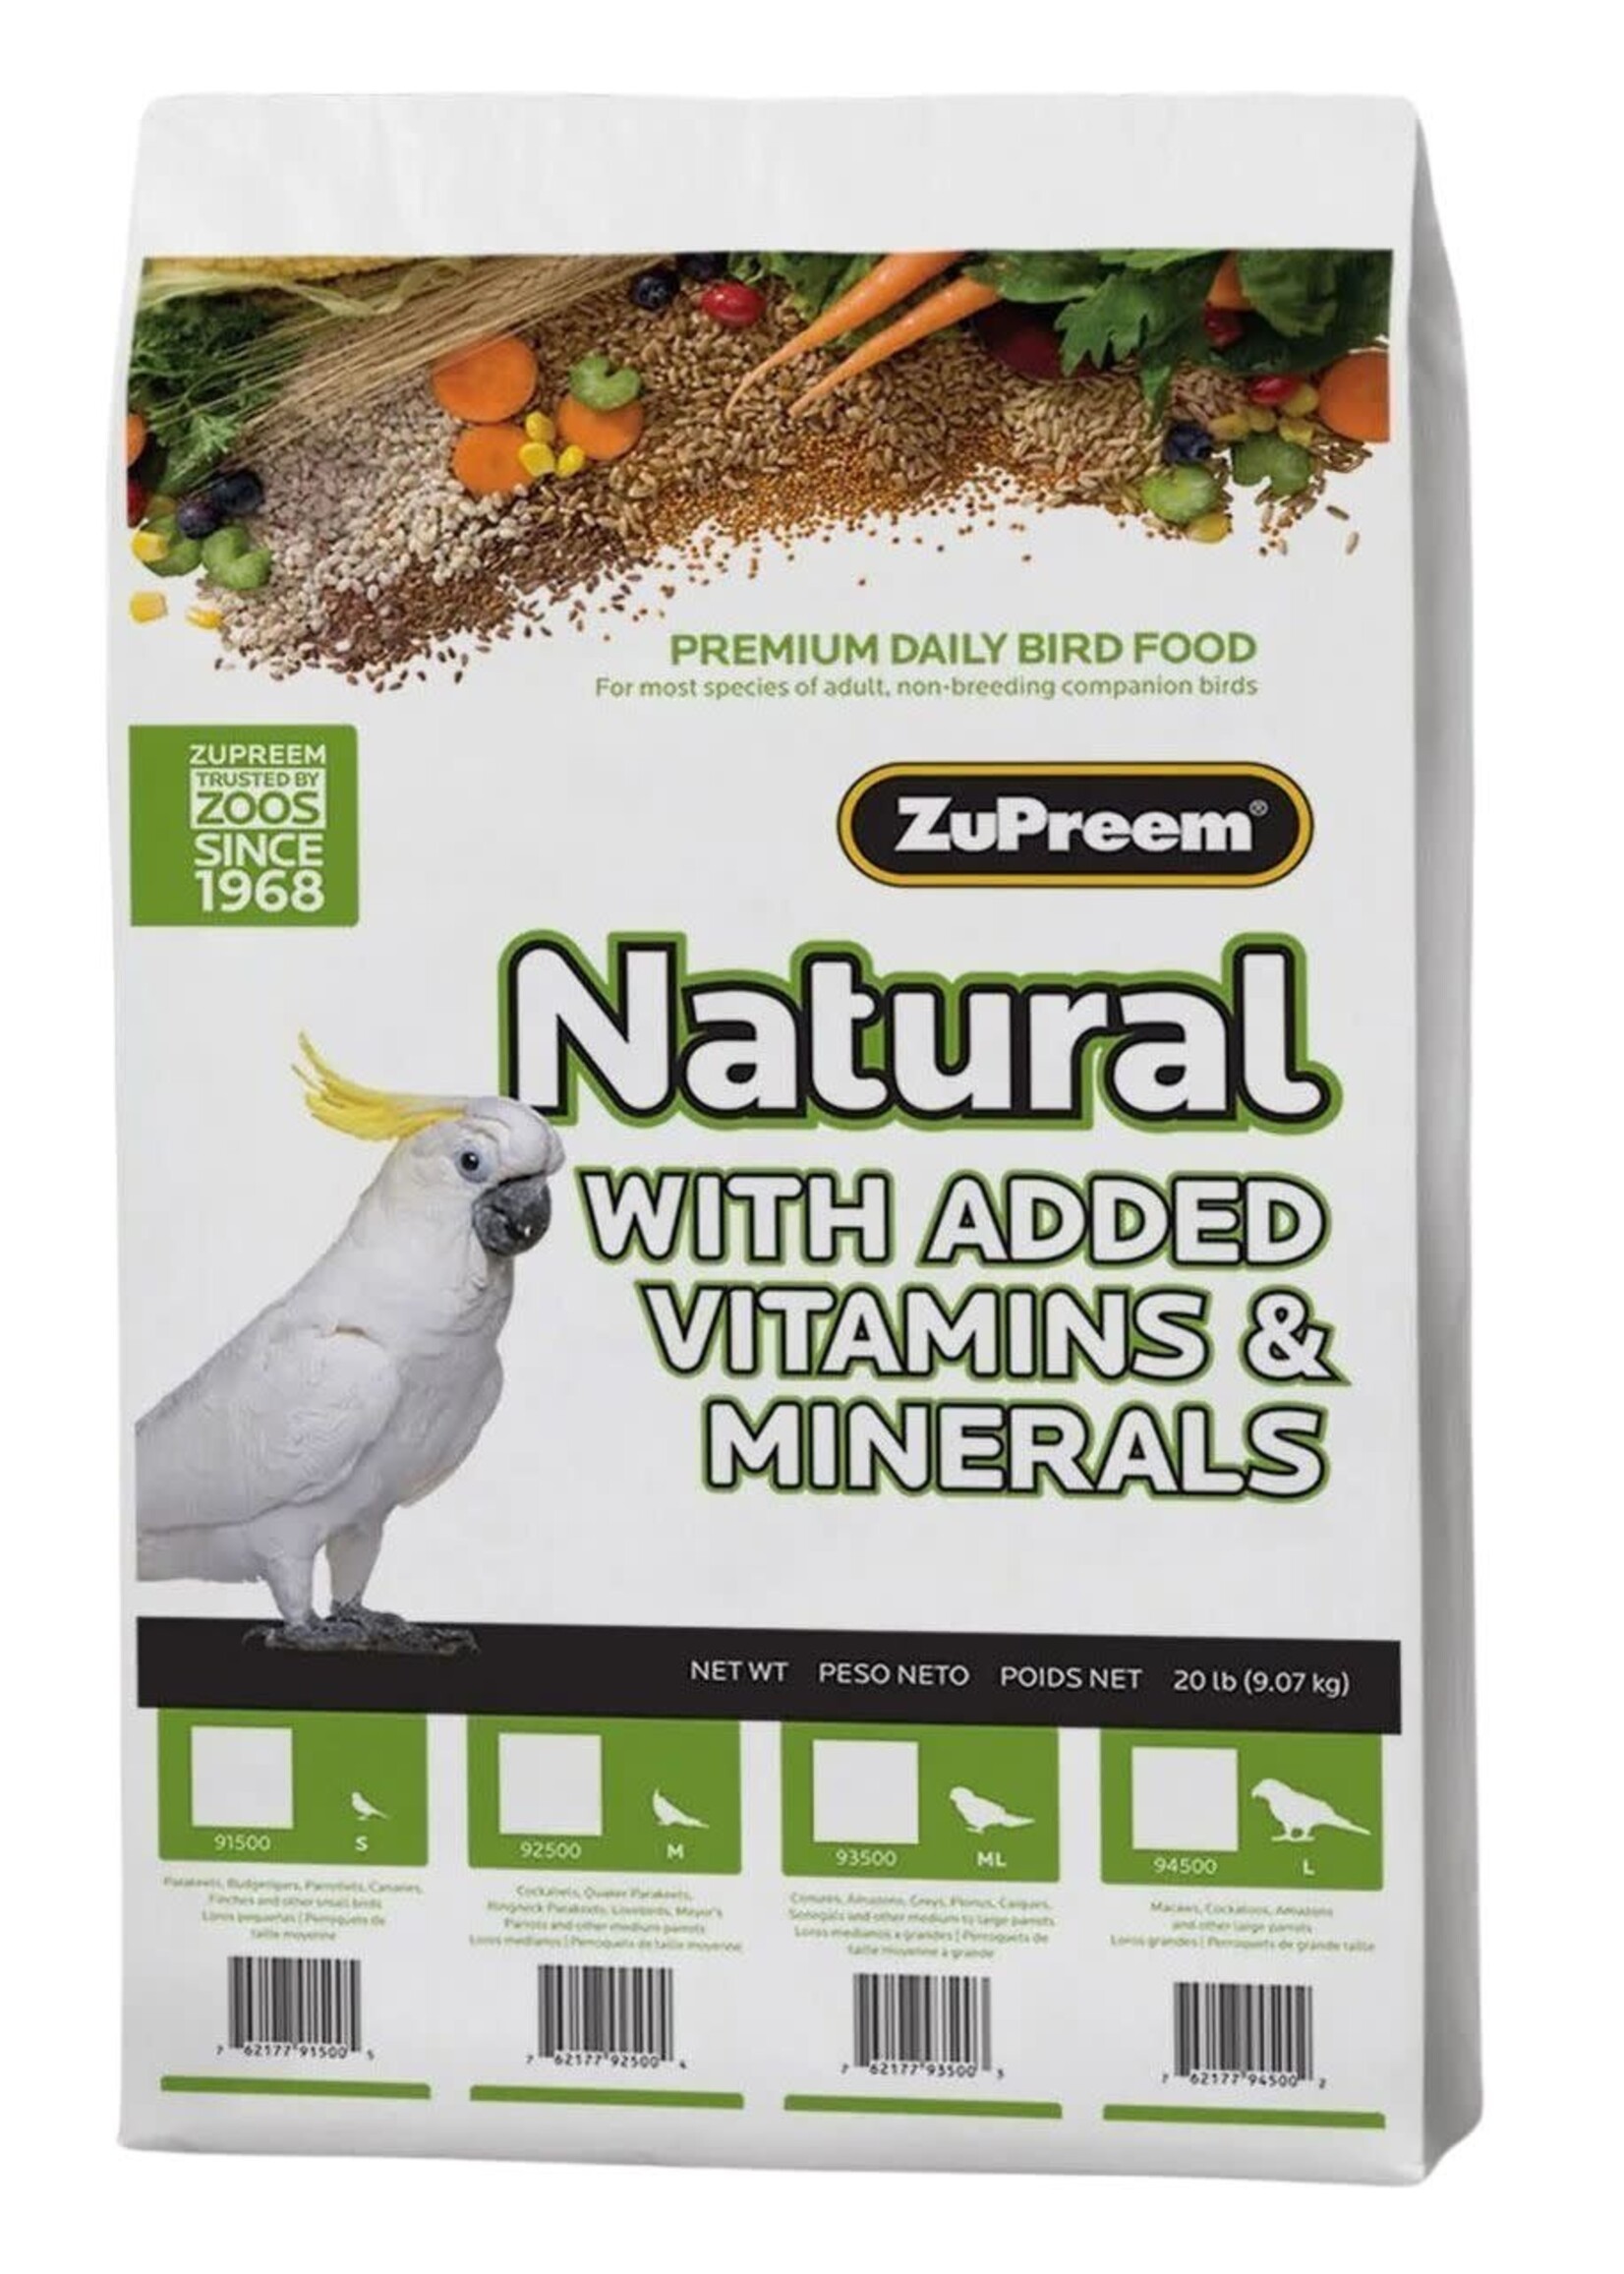 Zupreem ZuPreem "Natural" Food For Cockatiel, Lovebirds & Medium Birds 20lbs 92500